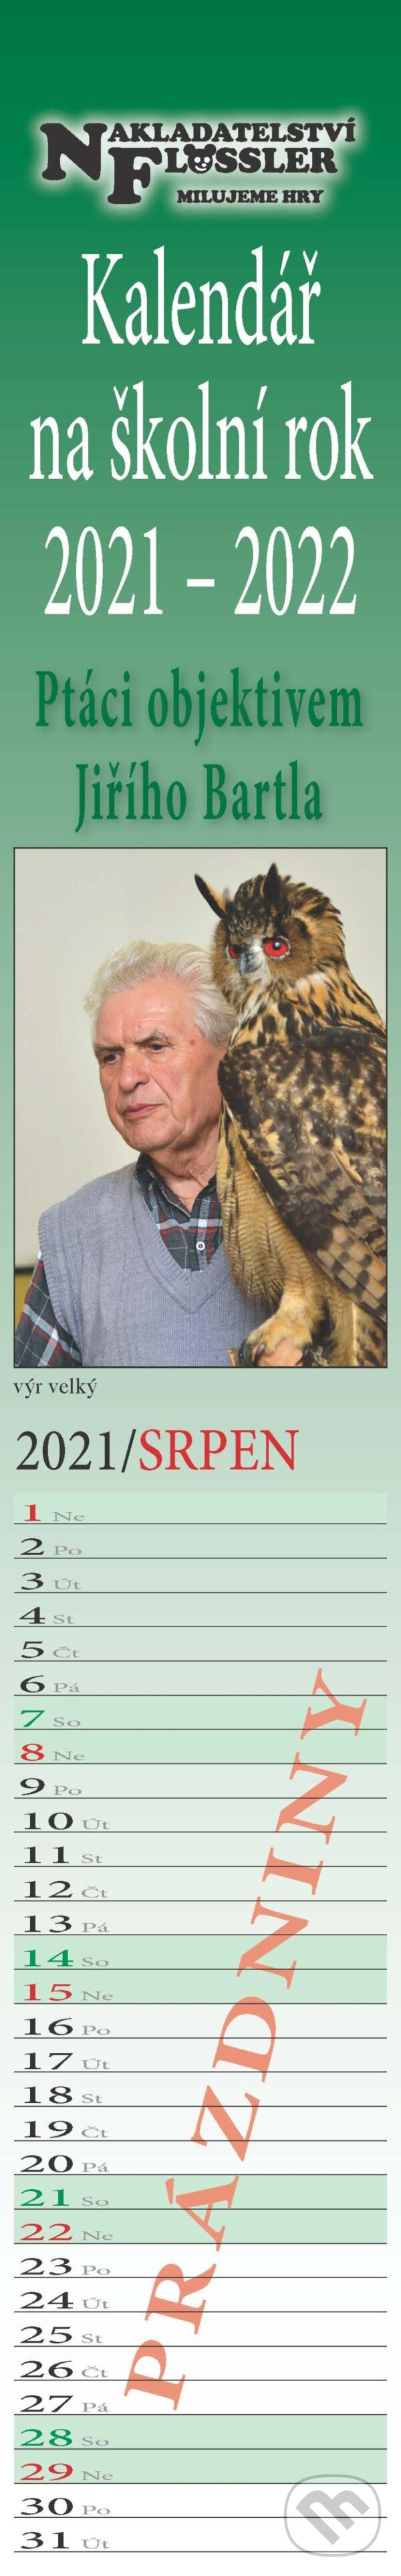 Kalendář na školní rok 2021-2022 - Ptáci objektivem Jiřího Bartla - Dobruška Flösslerová, Flössler, 2021